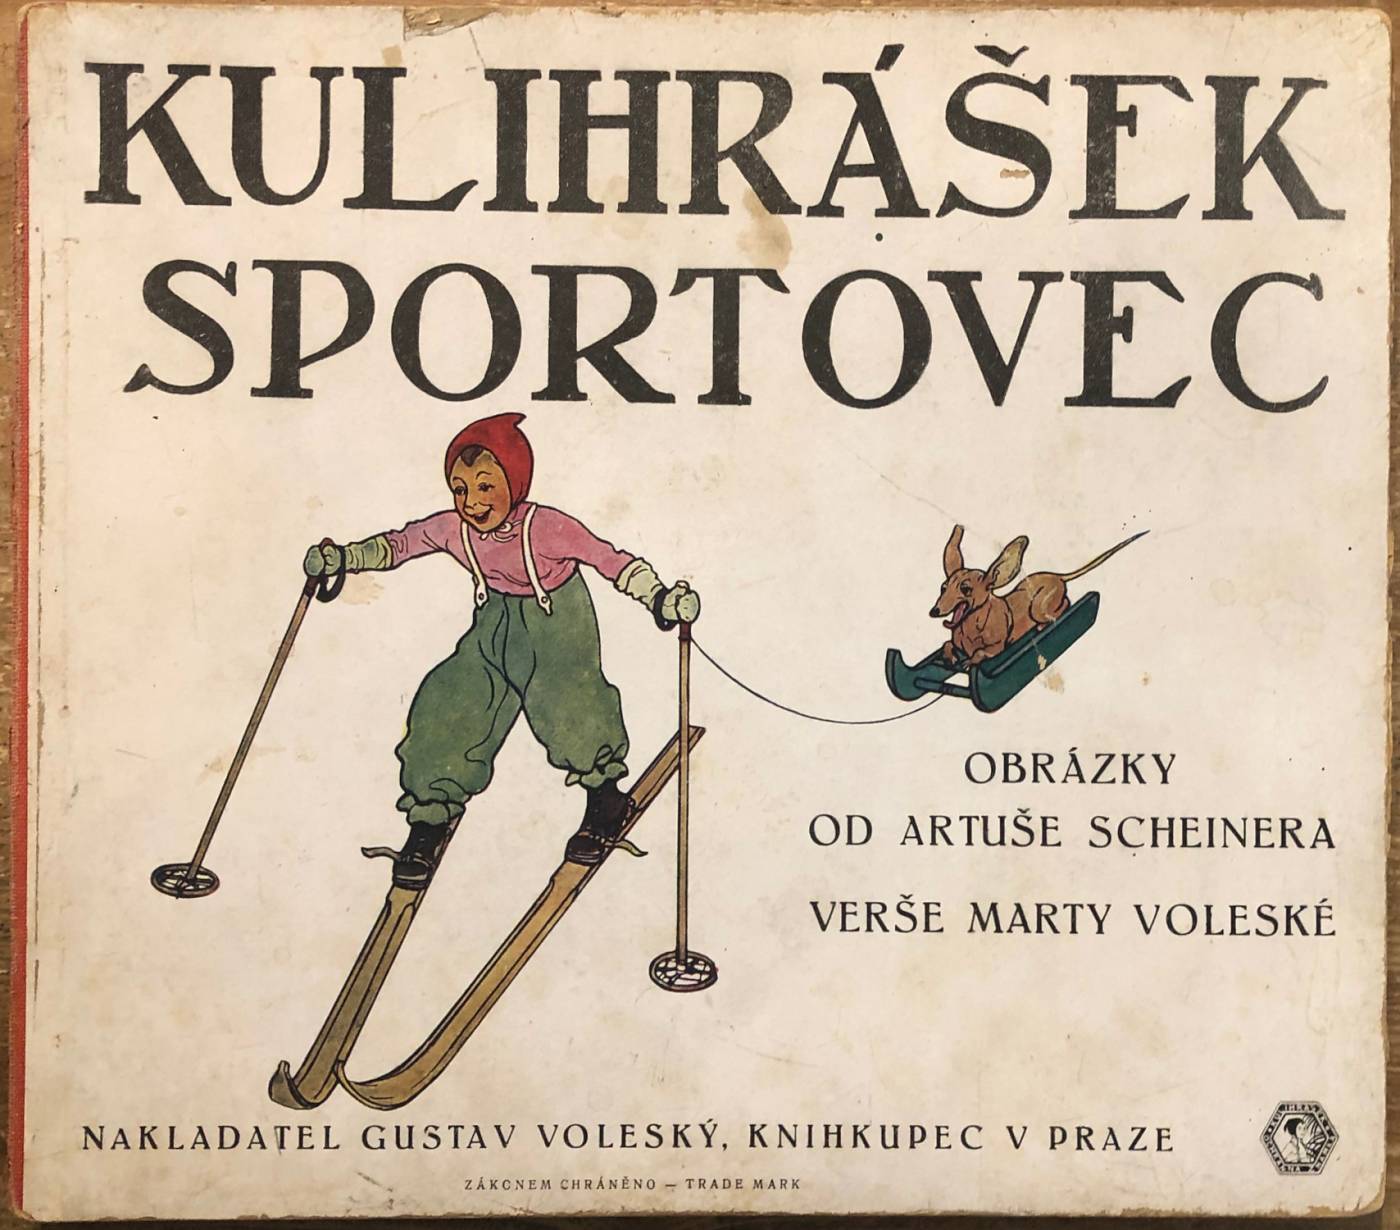 Voleská, Marta – Kulihrášek sportovec